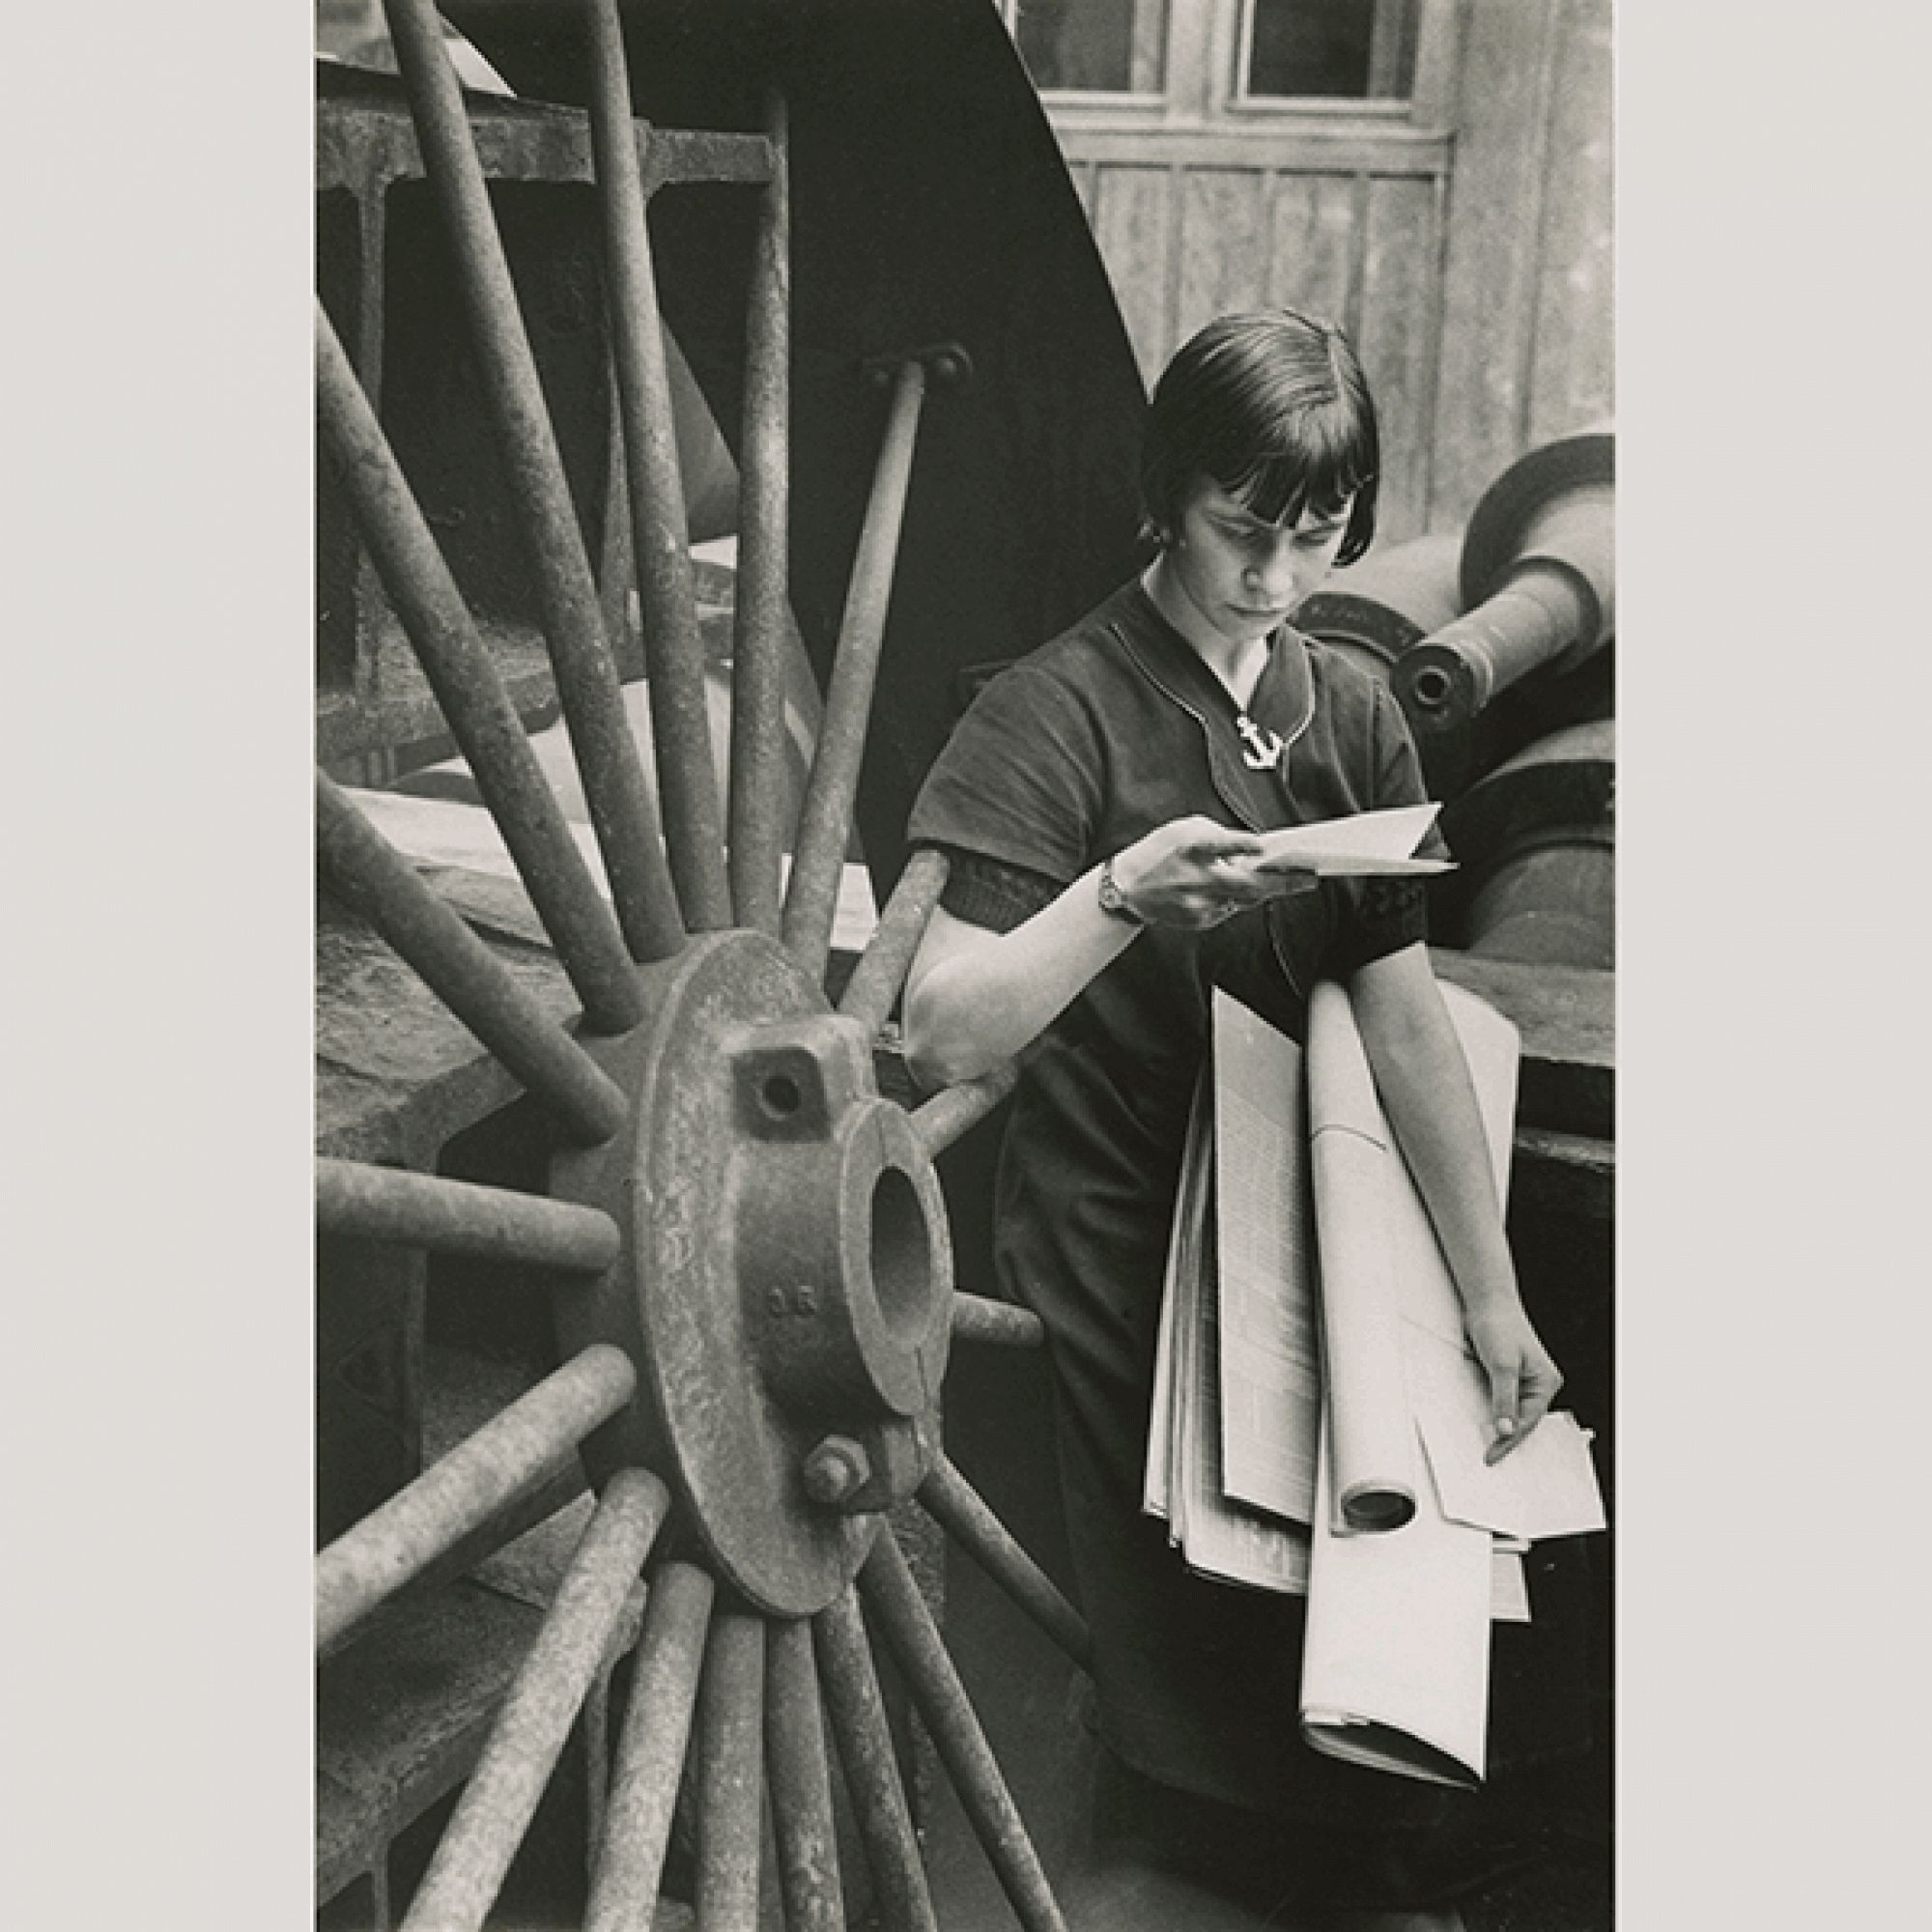 Berti, Laufmädchen in der Maschinenfabrik Oerlikon, 1936.